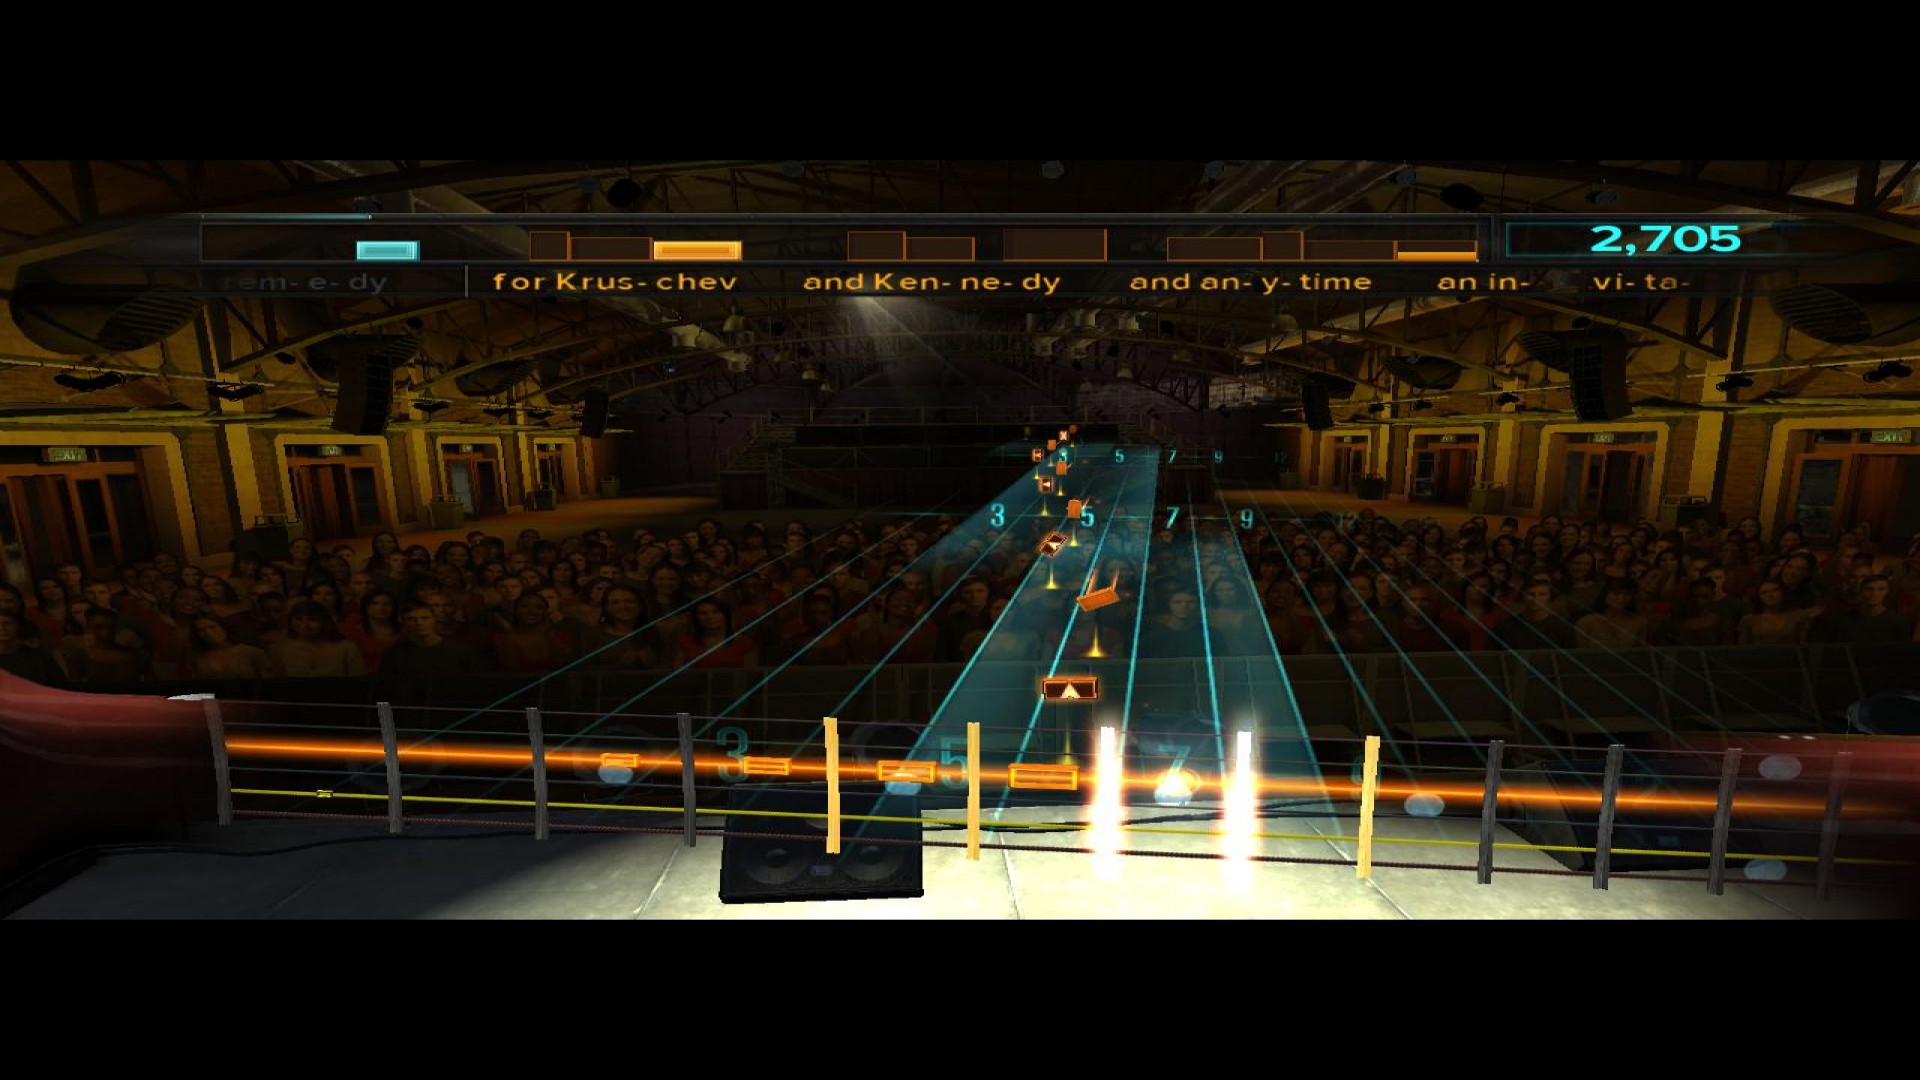 Rocksmith - Queen 5-Song Pack screenshot